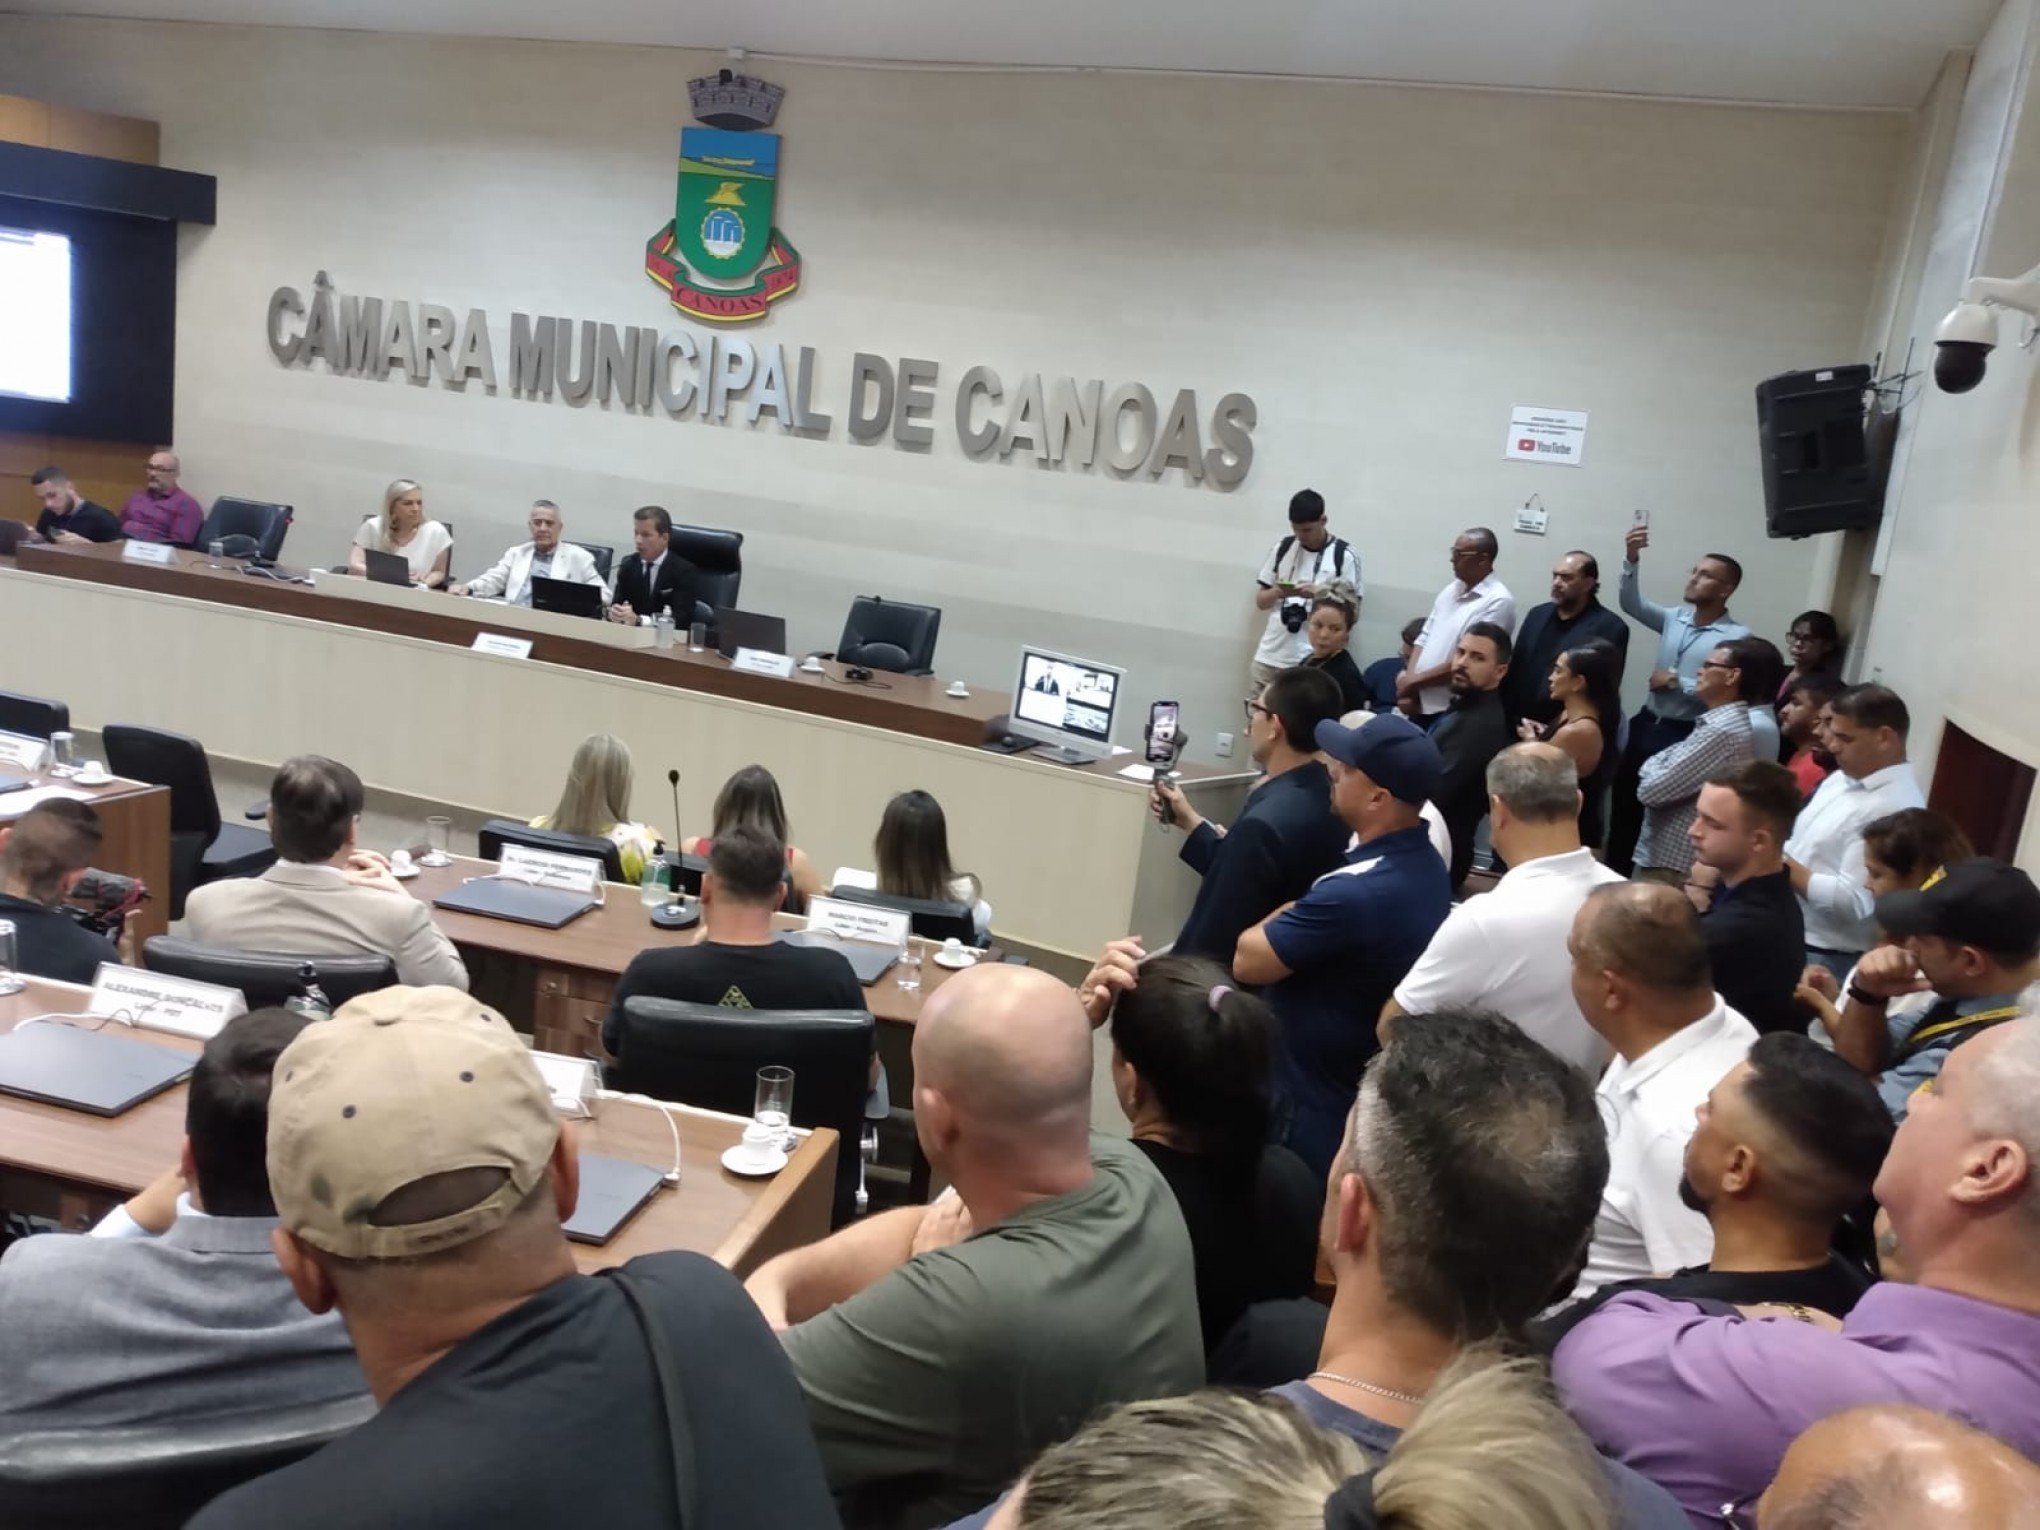 AO VIVO: Acompanhe em vídeo a posse de Nedy de Vargas Marques como prefeito de Canoas